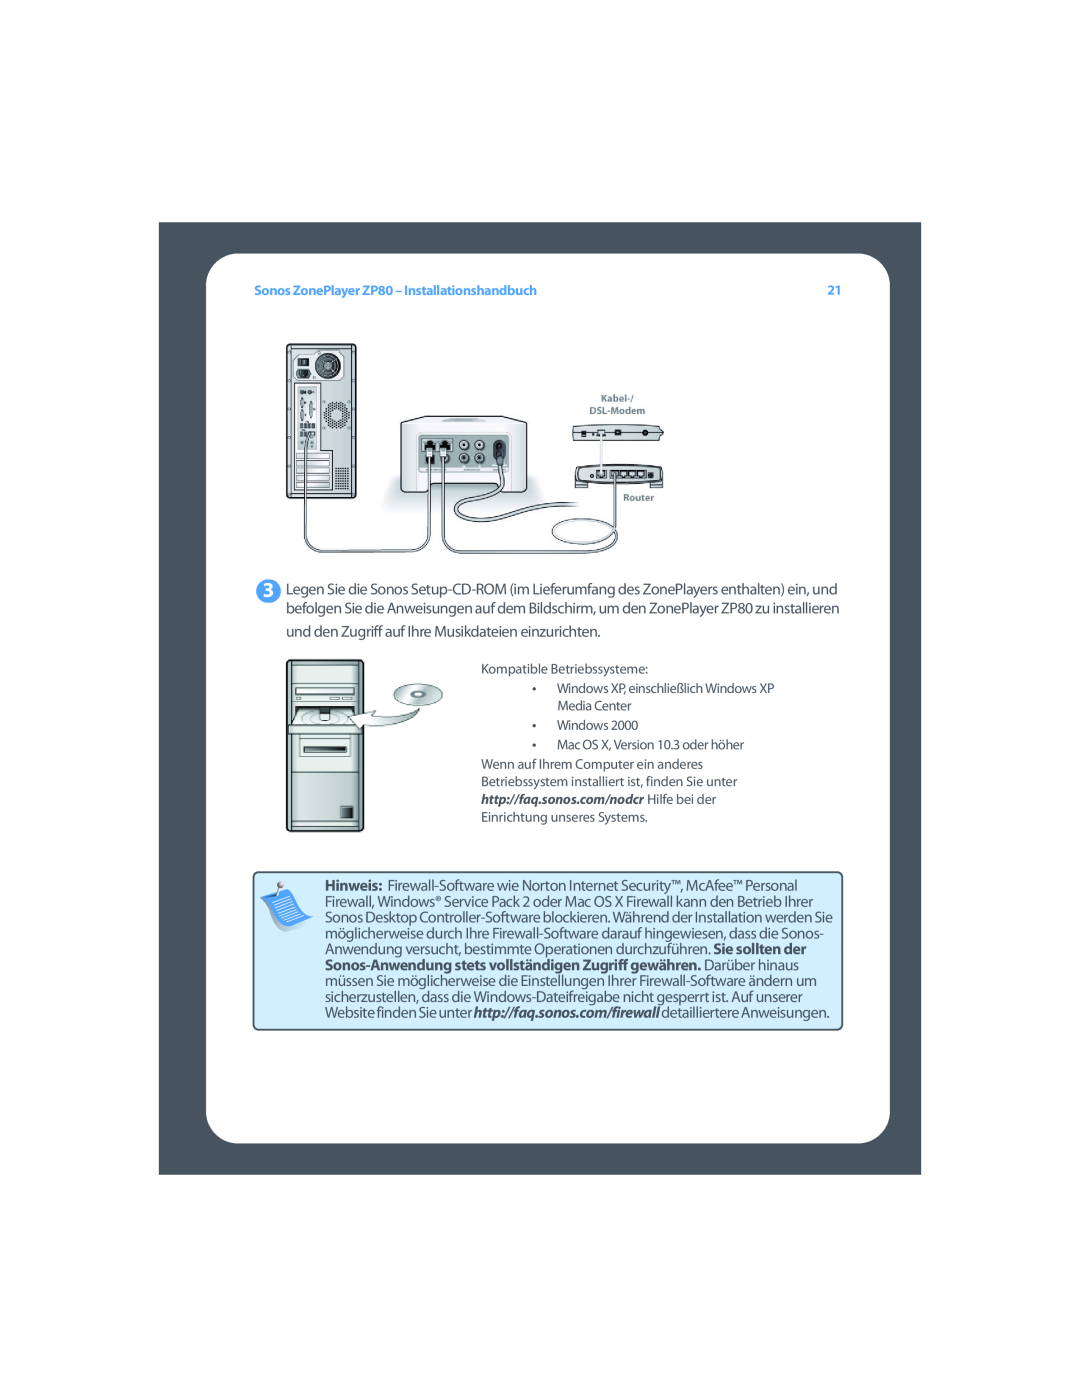 Sonos setup guide Sonos ZonePlayer ZP80 – Installationshandbuch, Kompatible Betriebssysteme, •Windows 